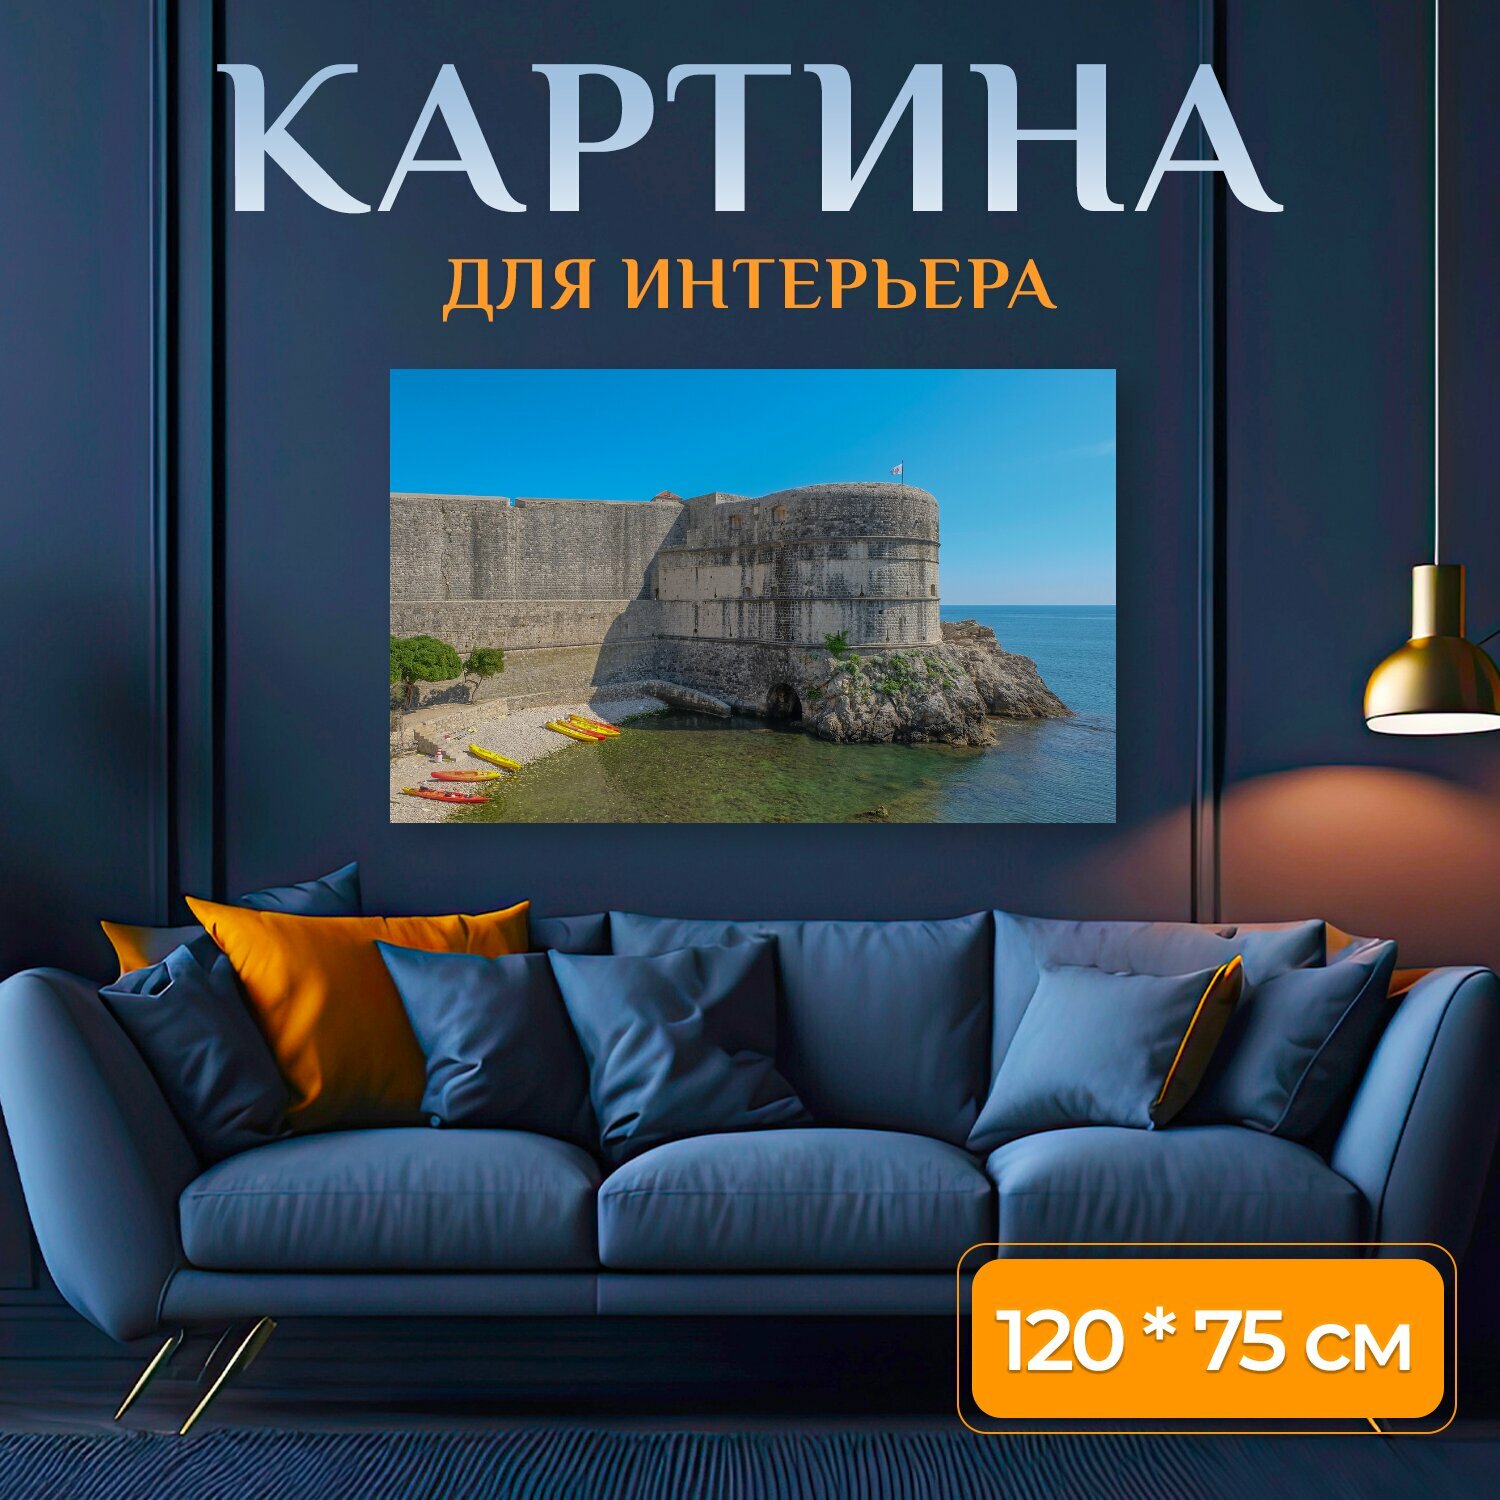 Картина на холсте "Хорватия, дубровник, средиземное море" на подрамнике 120х75 см. для интерьера